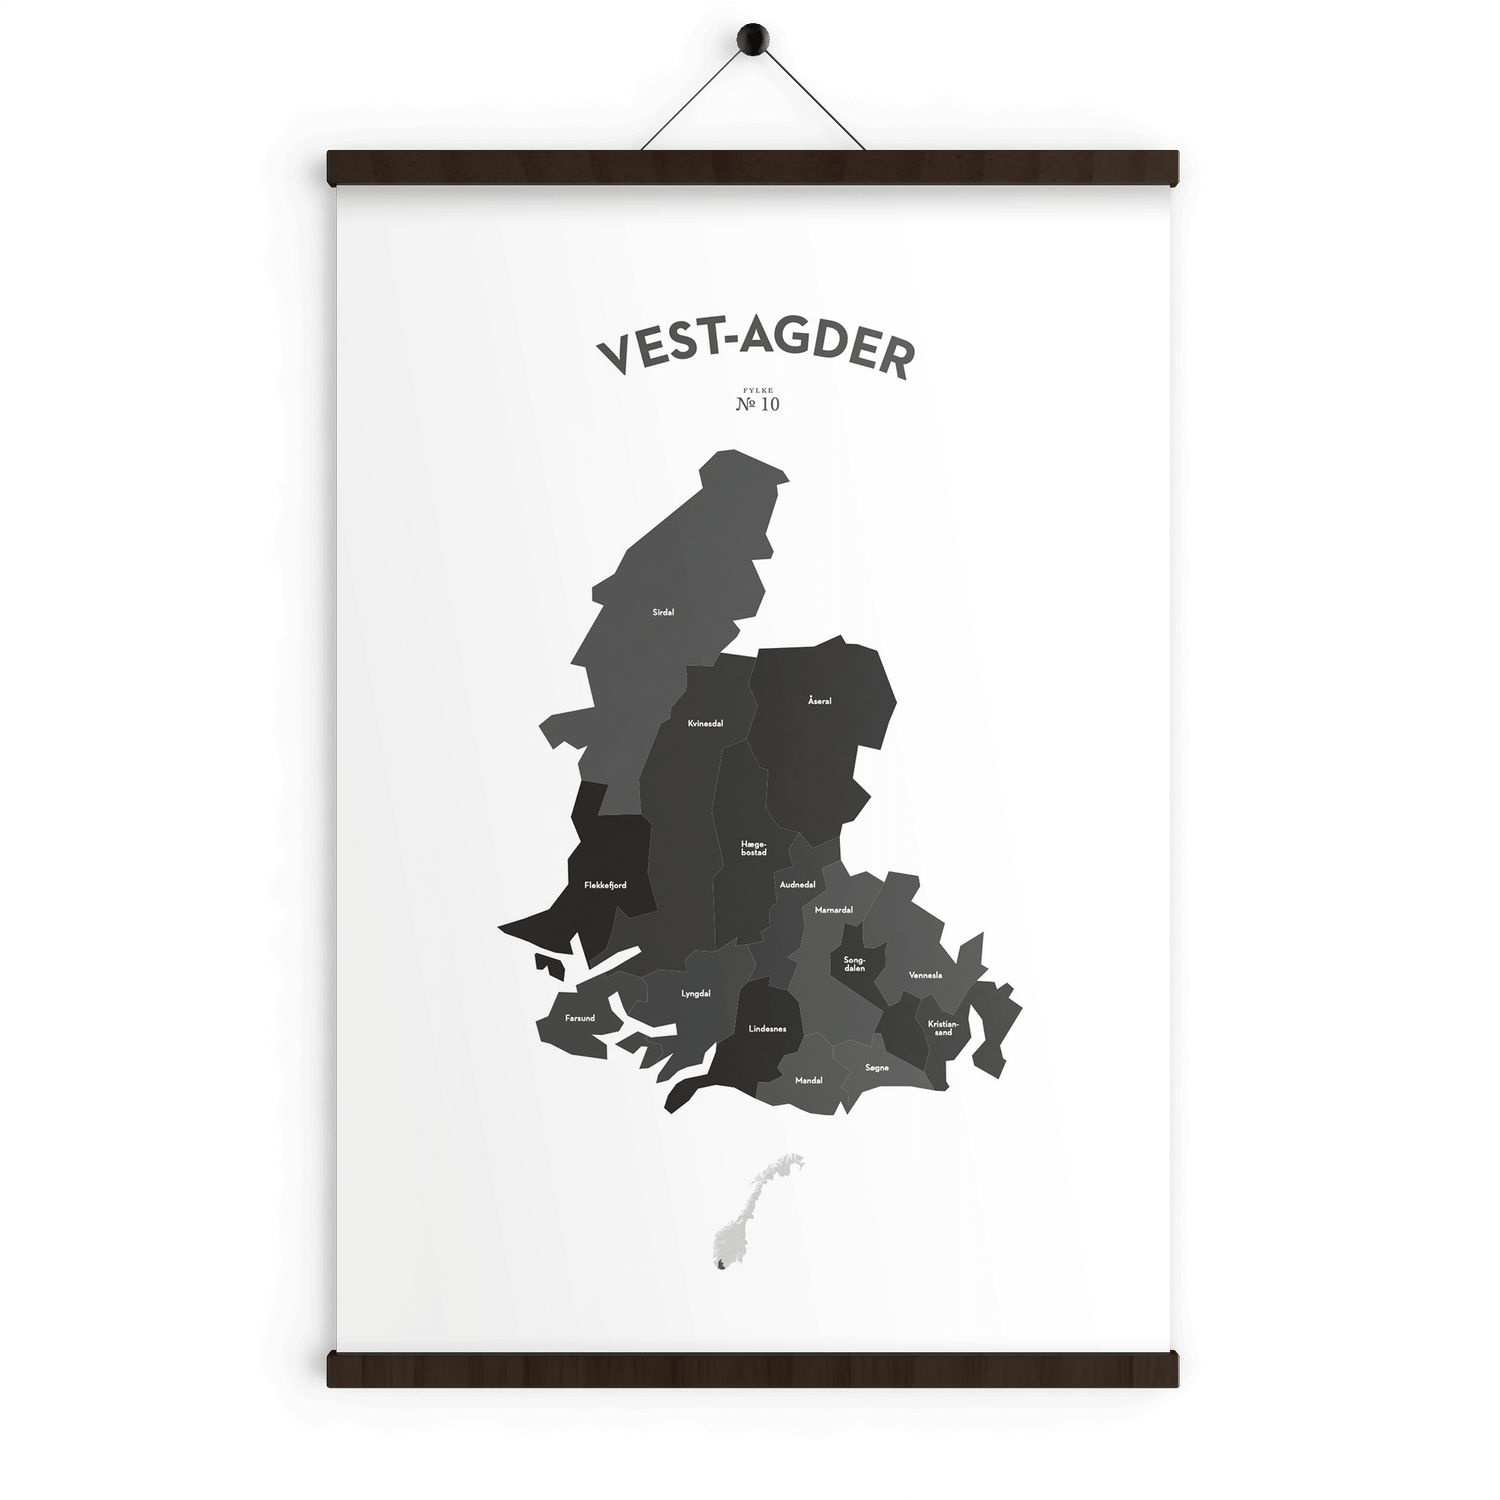 Vest-Agder